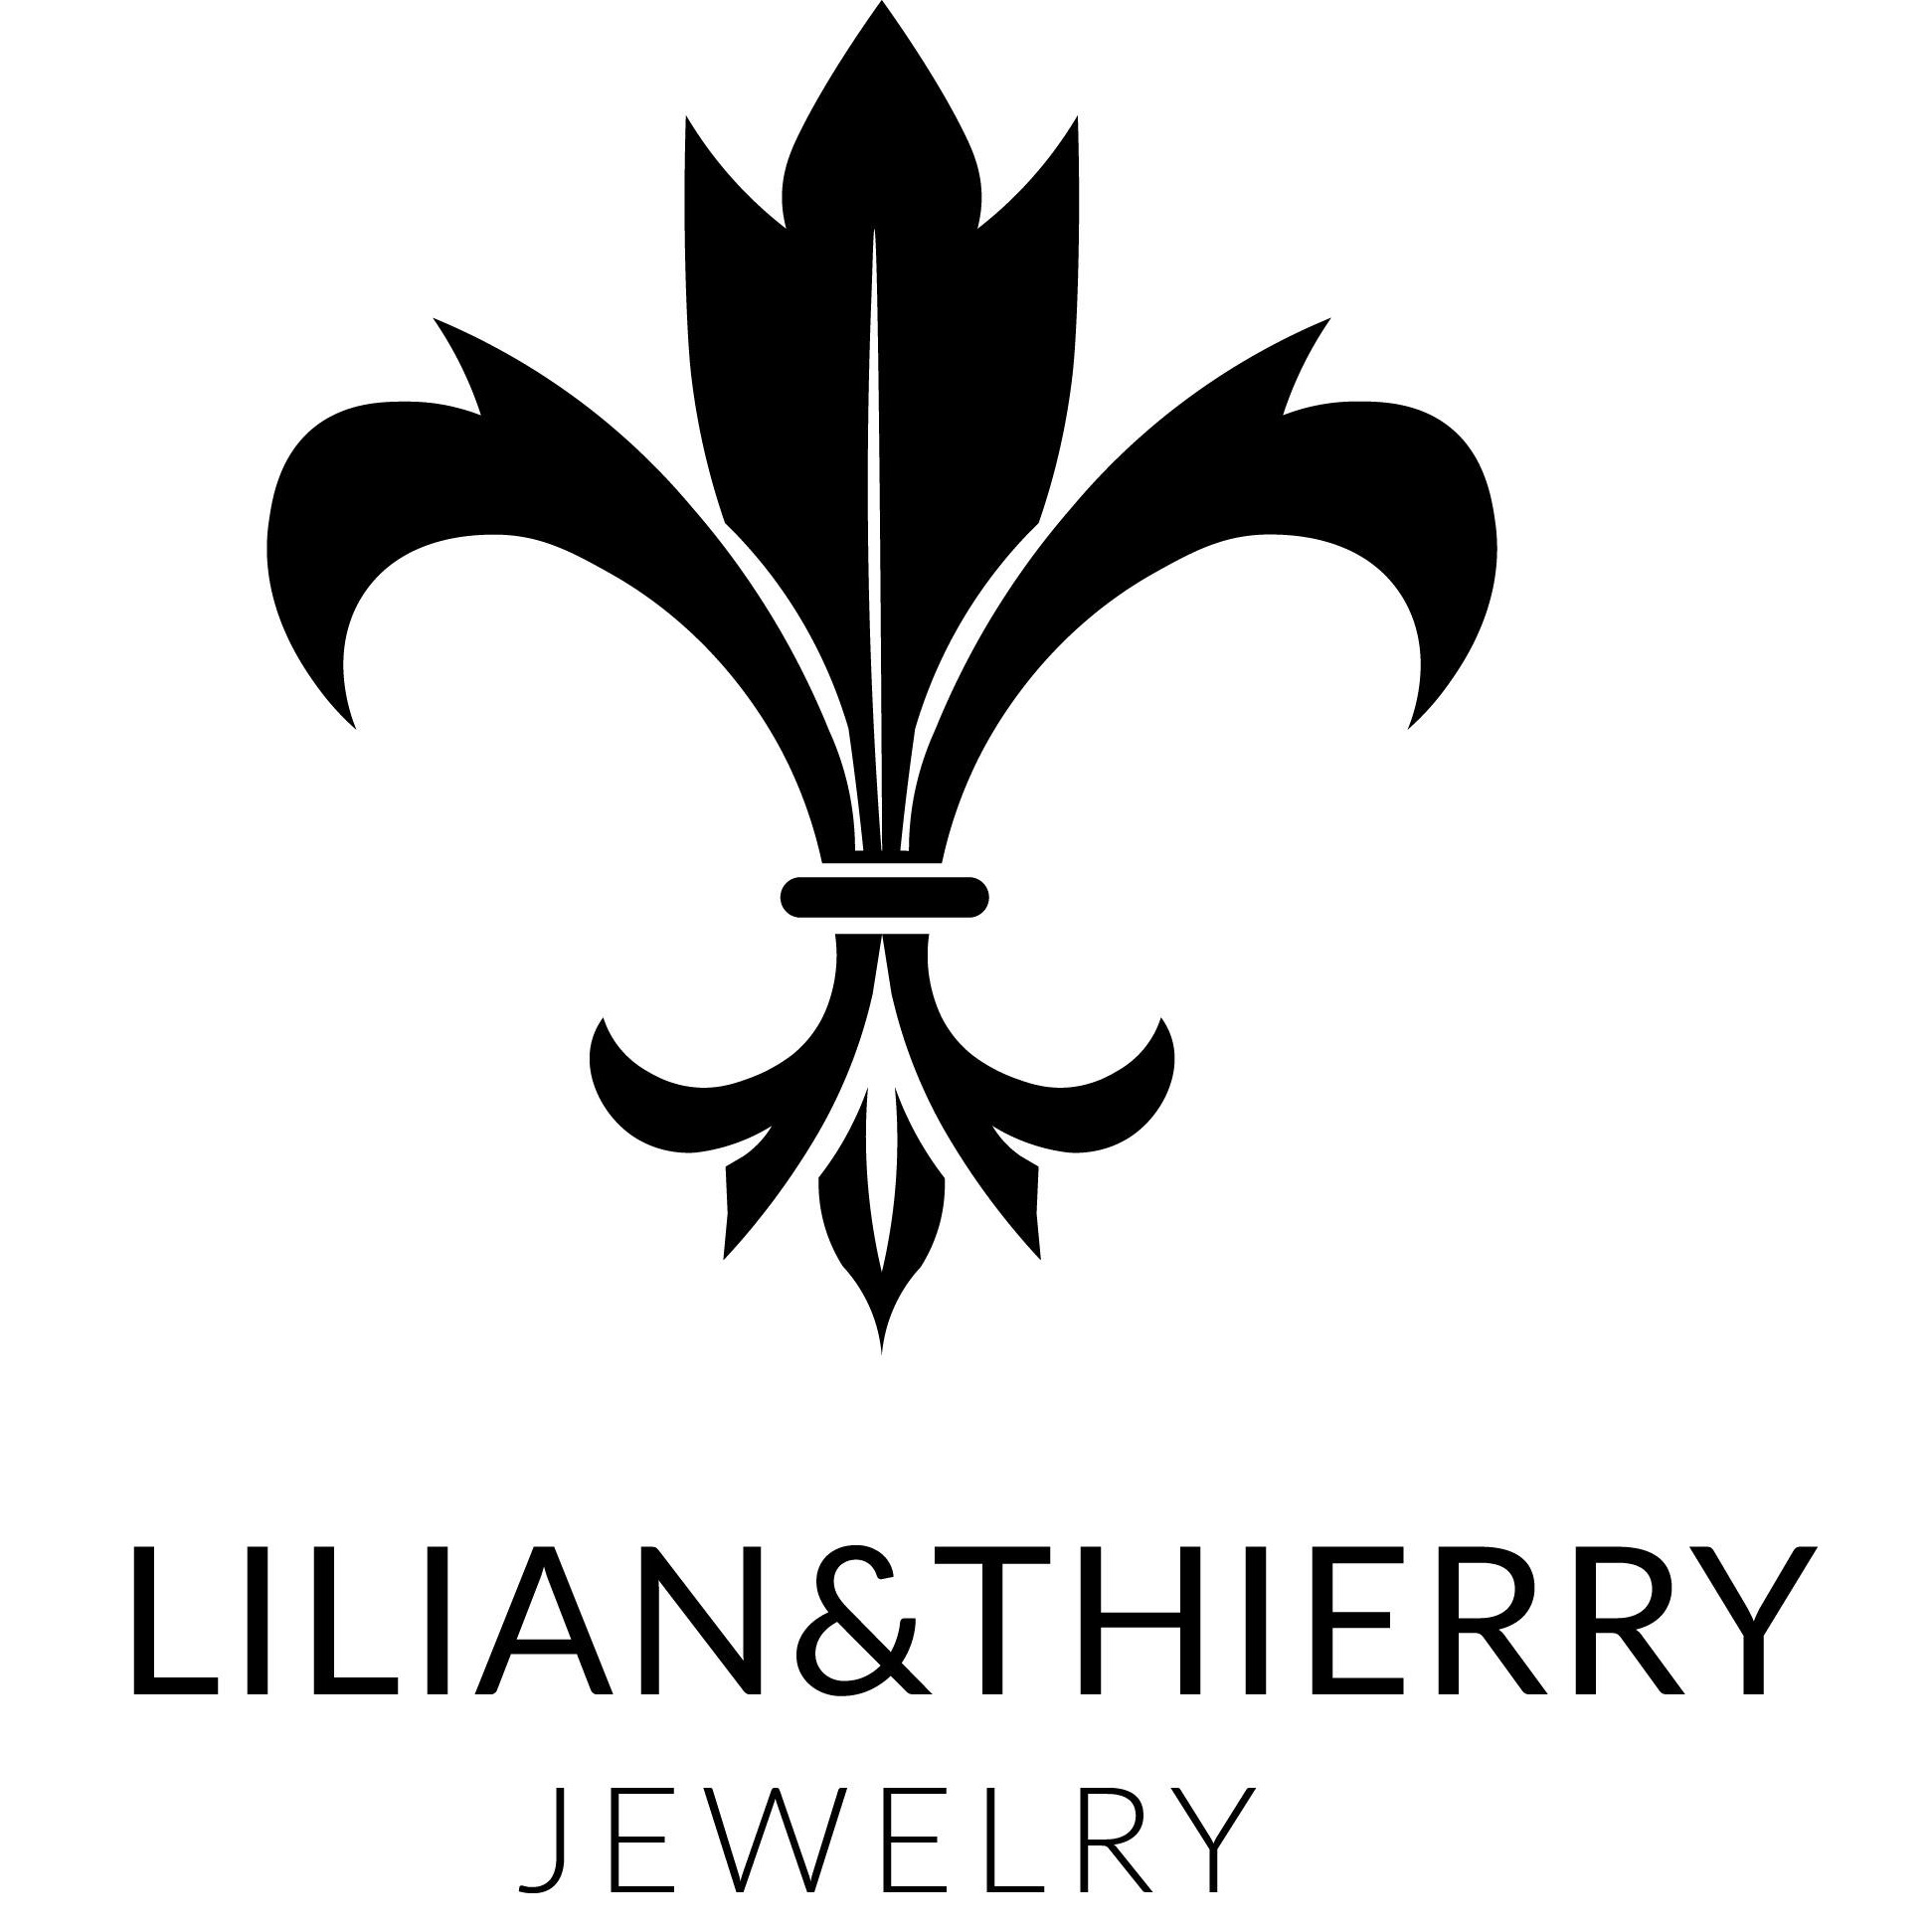 Logo Lilian&Thierry Jewelry - Onlineshop für exklusiven Edelstahlschmuck in zahlreichen unterschiedlichen Ausführungen.